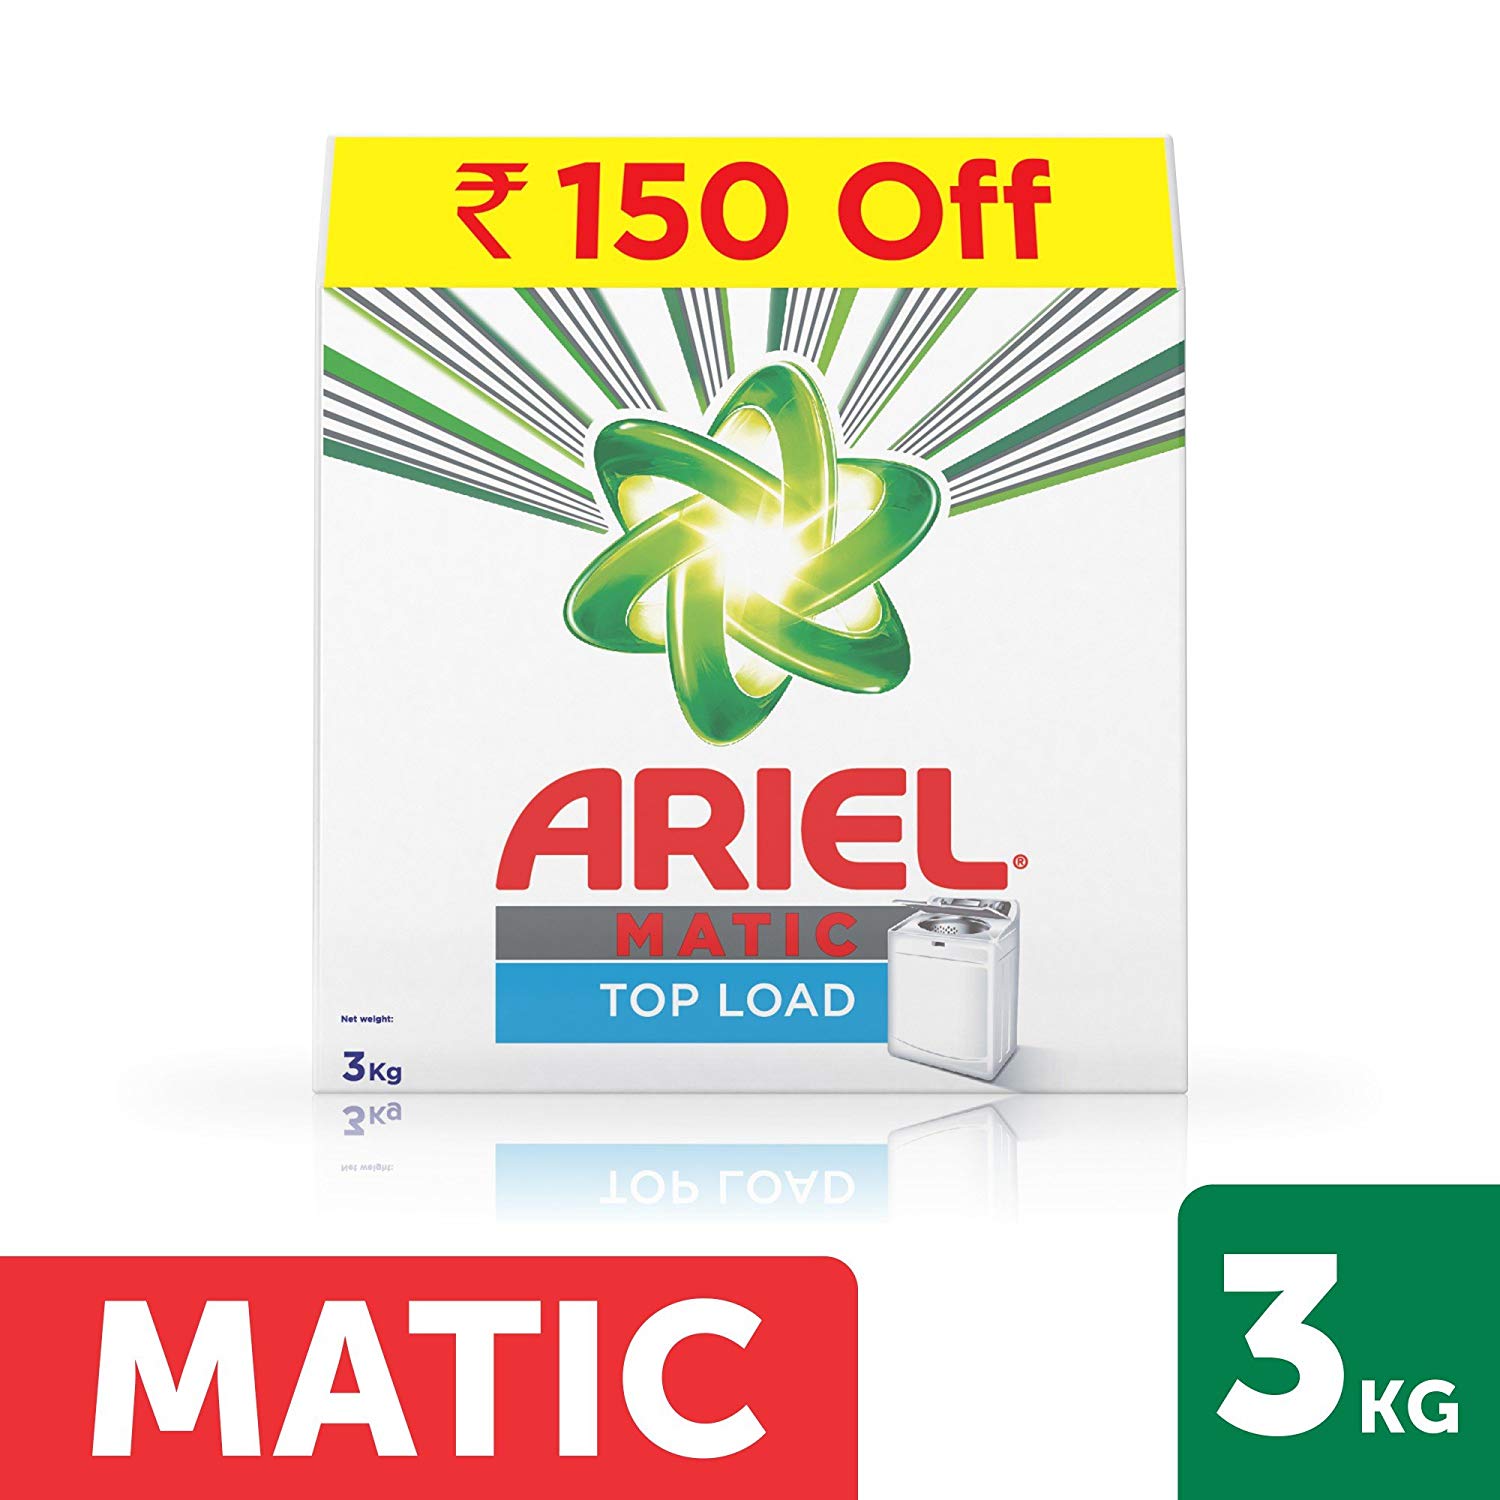 Ariel Matic Top Load Detergent Washing Powder - 3 kg